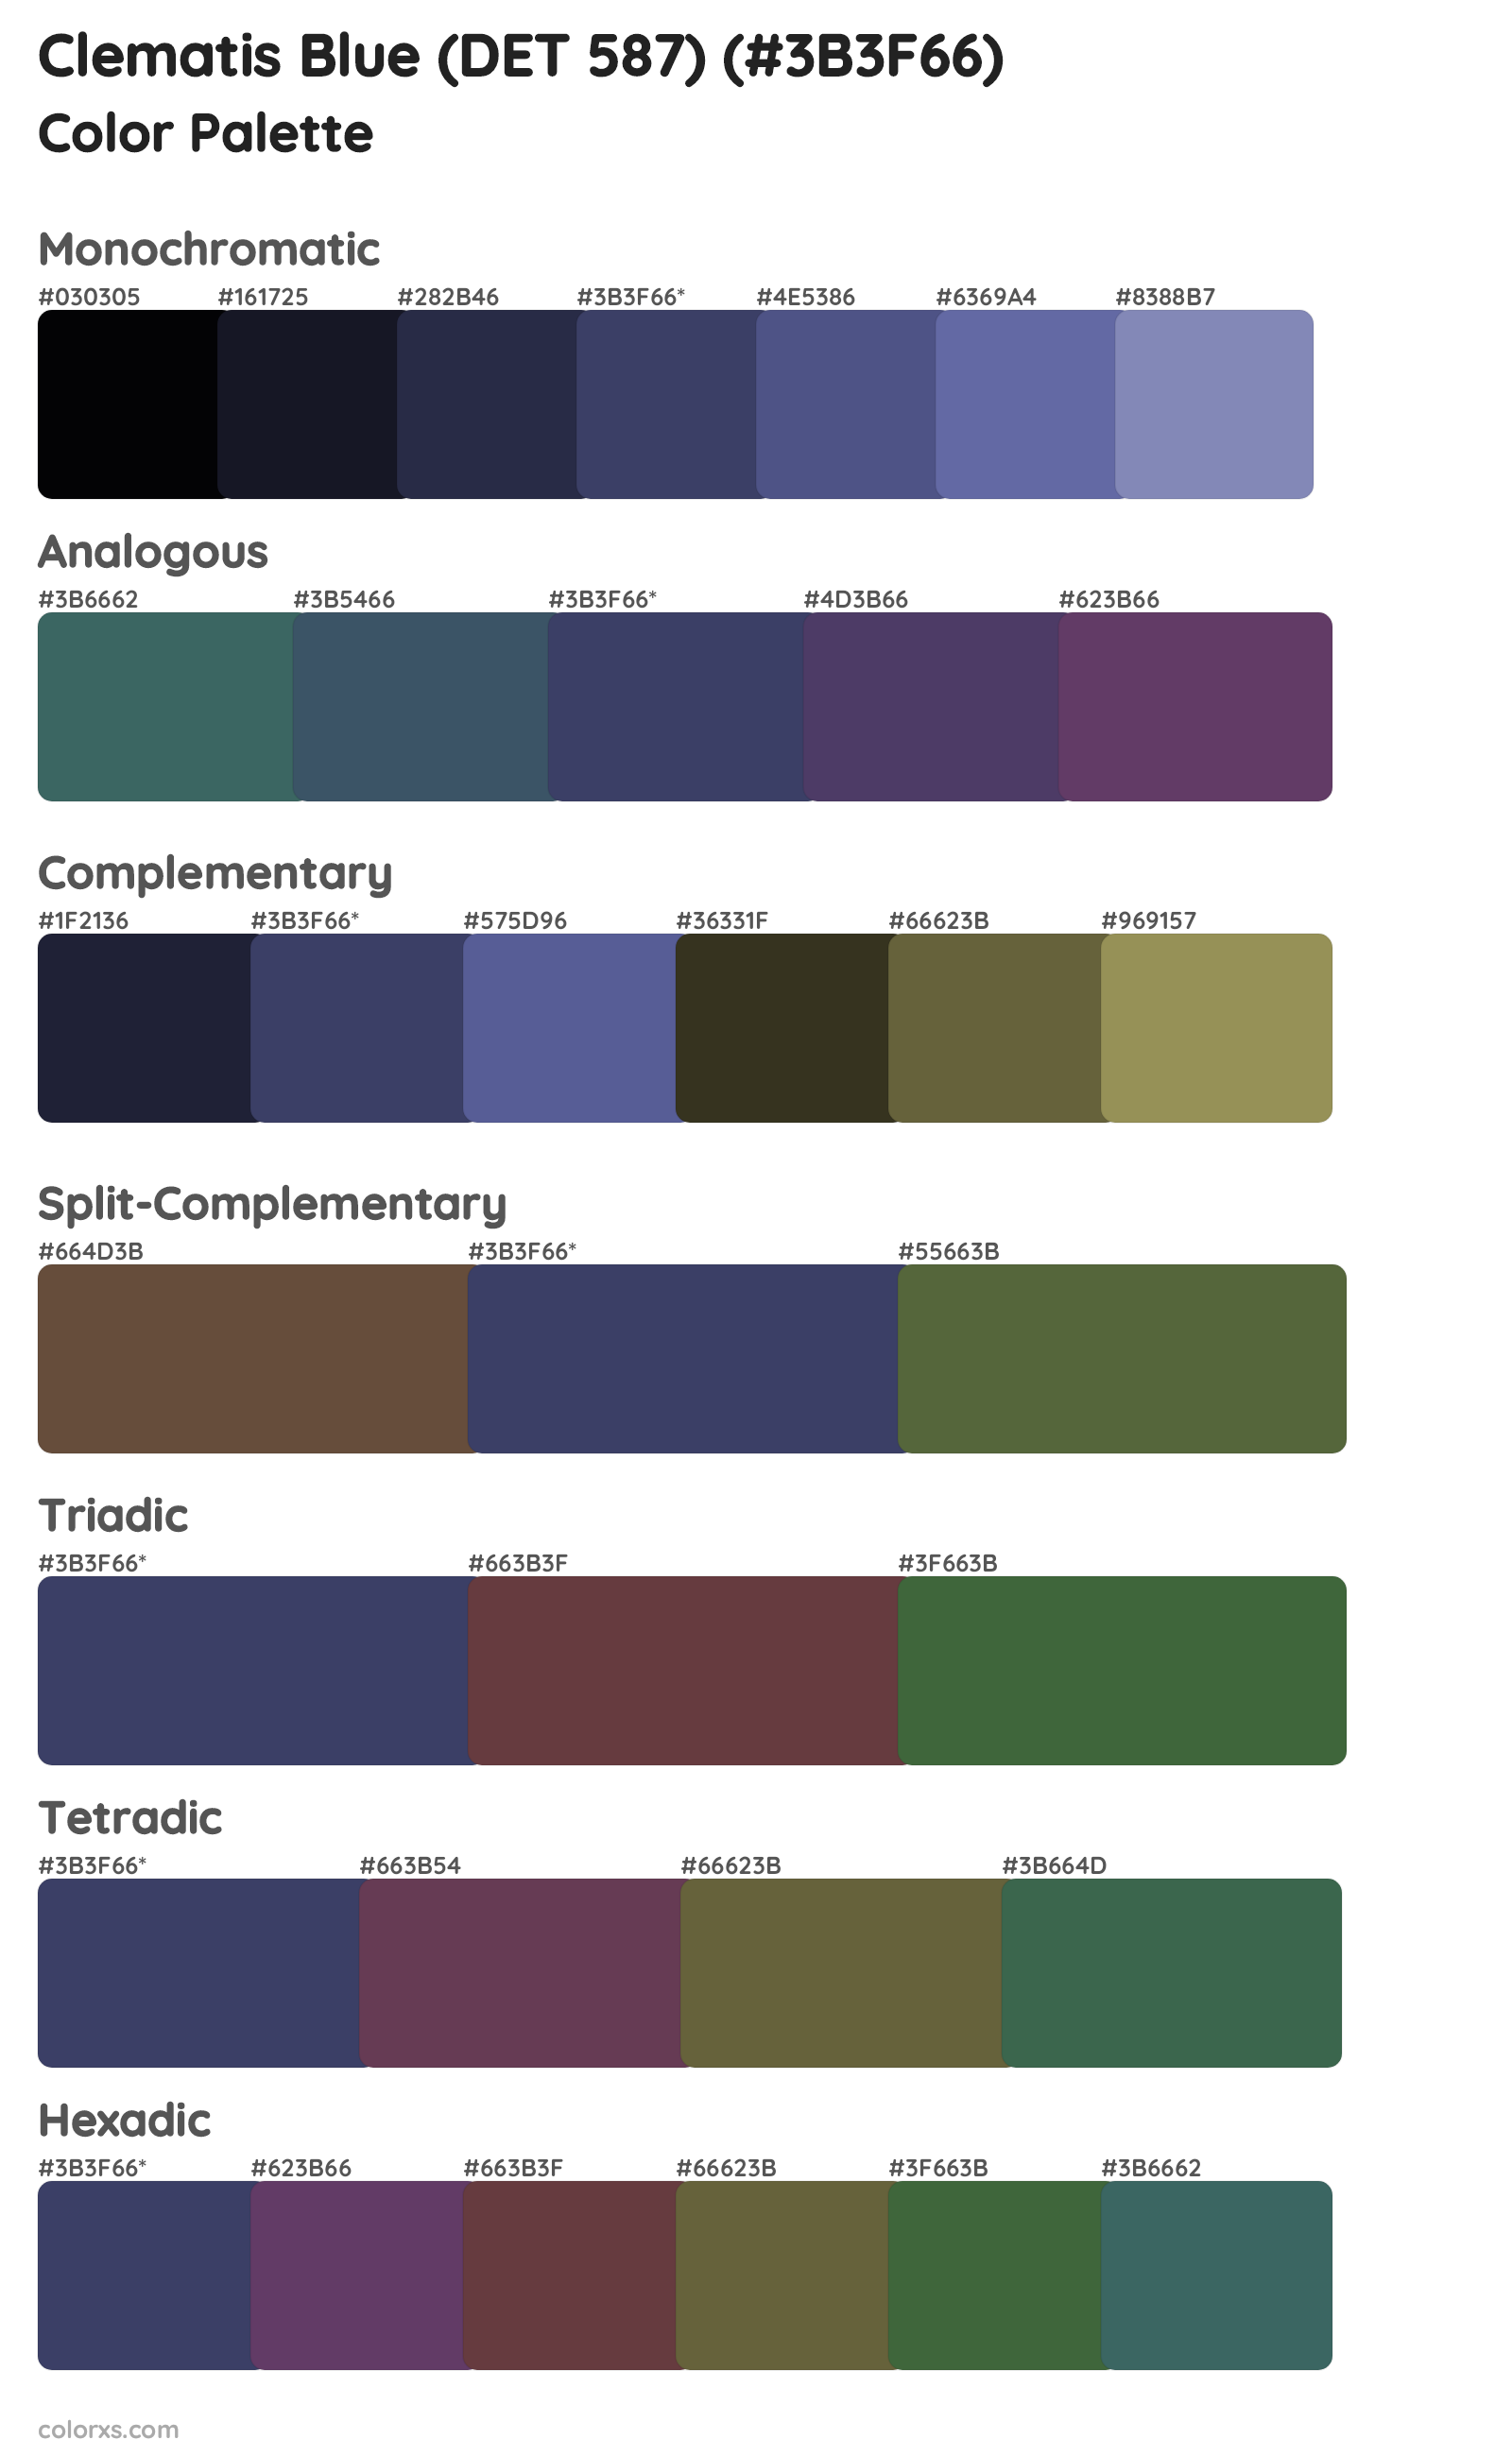 Clematis Blue (DET 587) Color Scheme Palettes